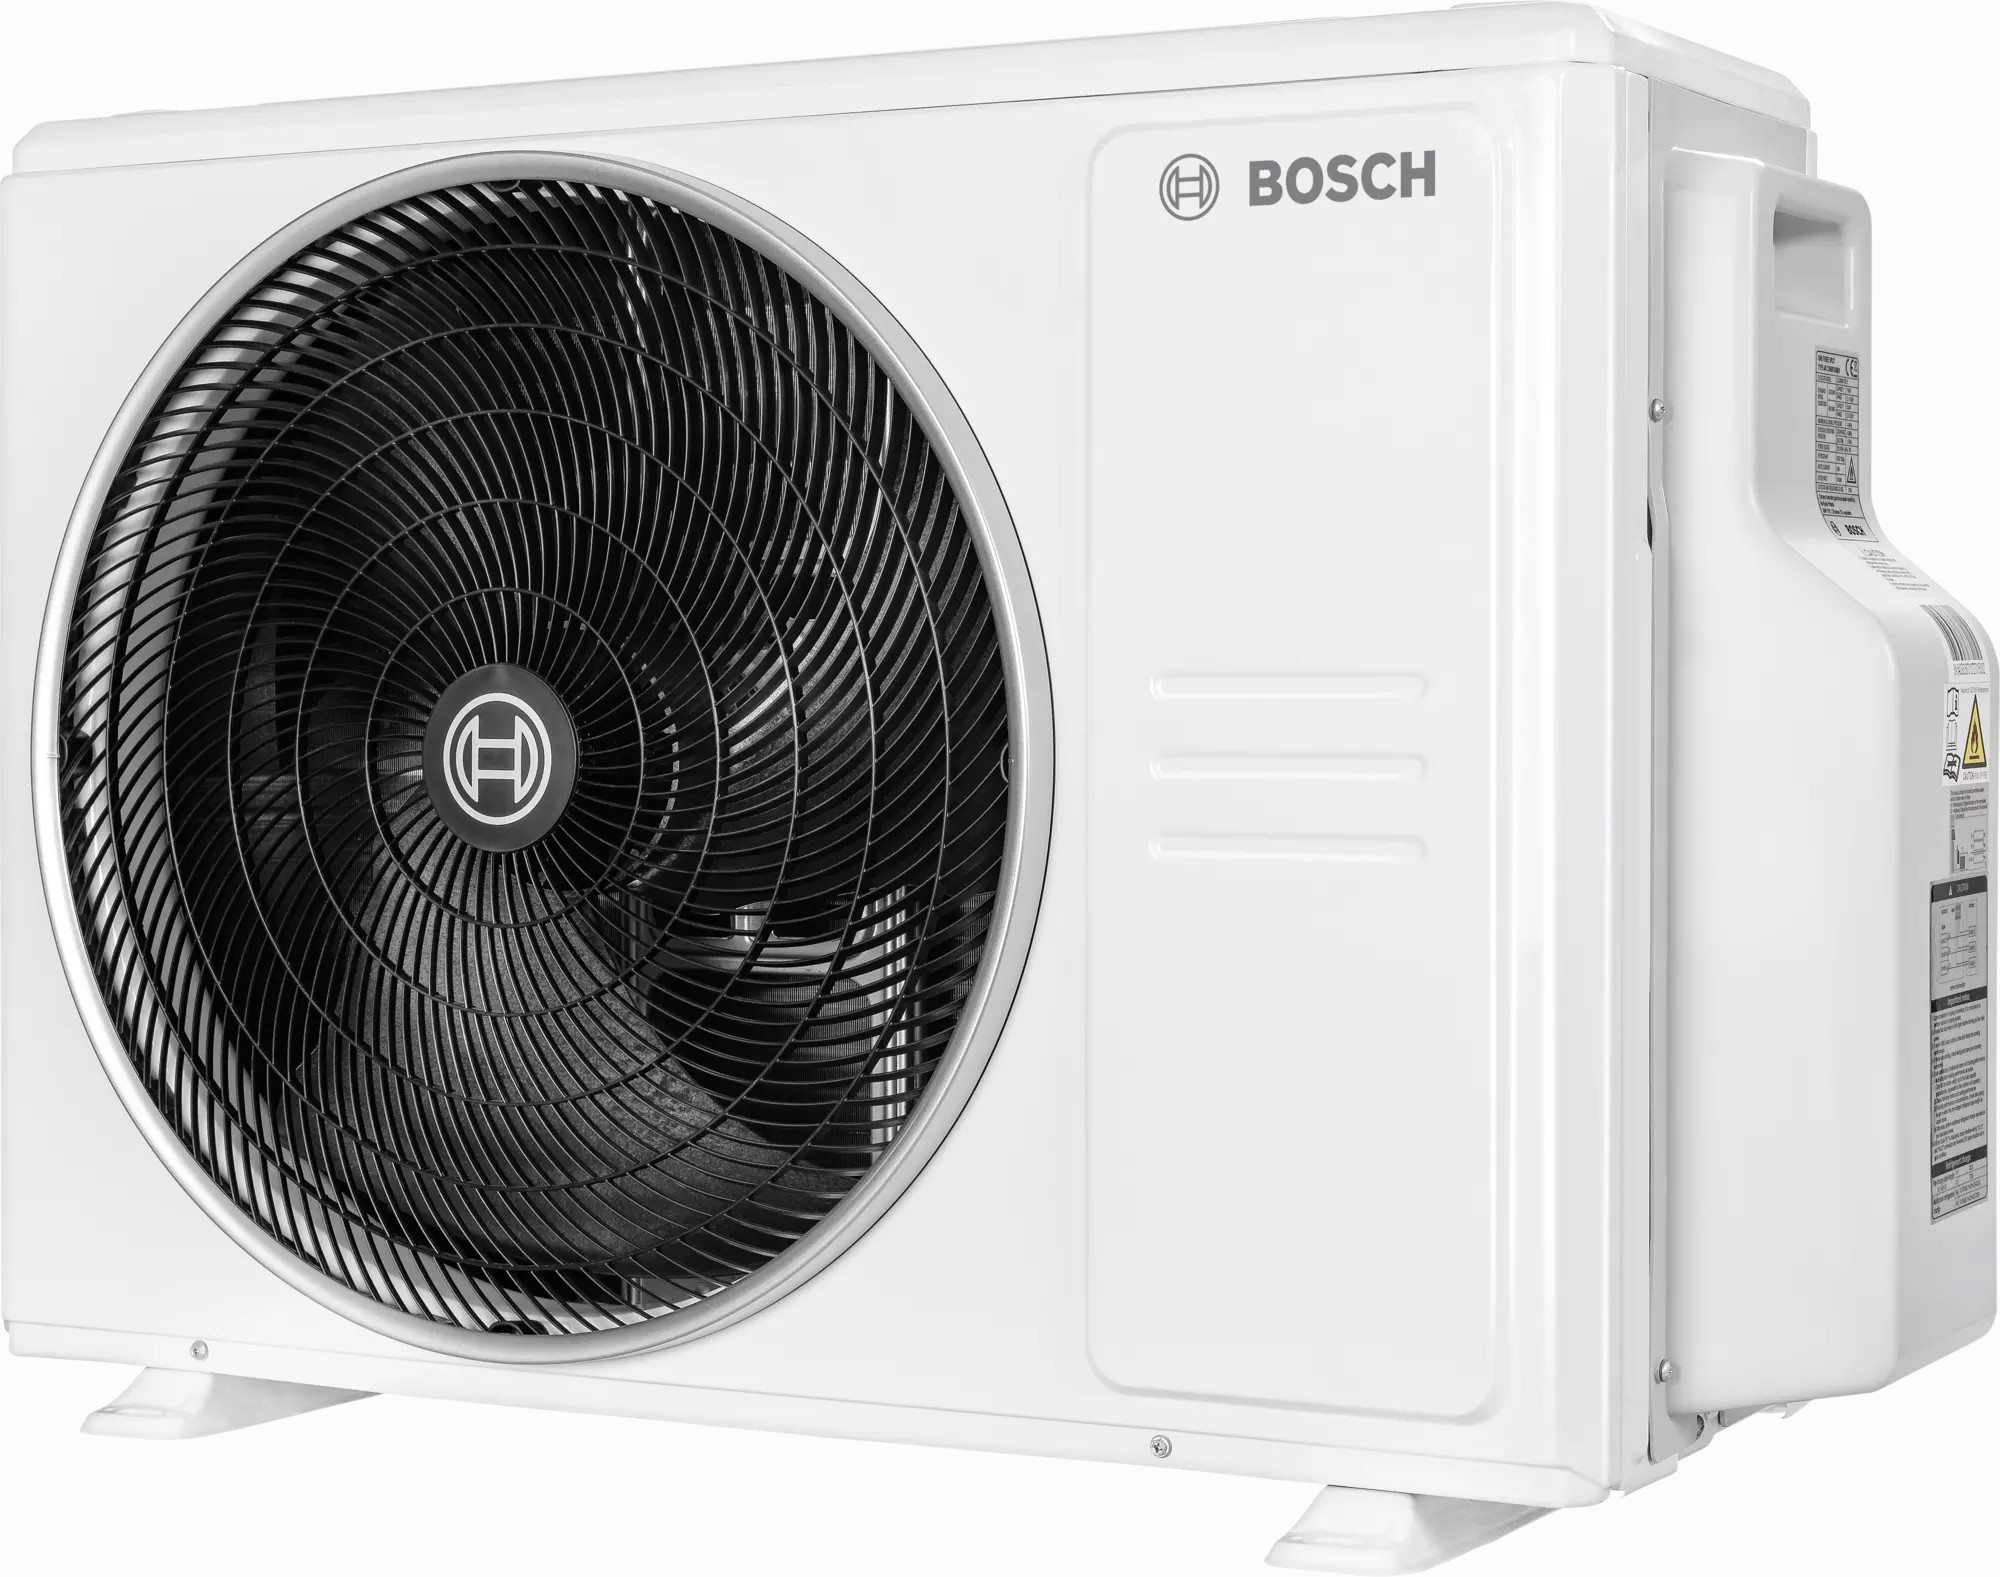 в продаже Наружный блок мультисплит-системы Bosch CL5000M 62/3 E, 6,2 кВт - фото 3